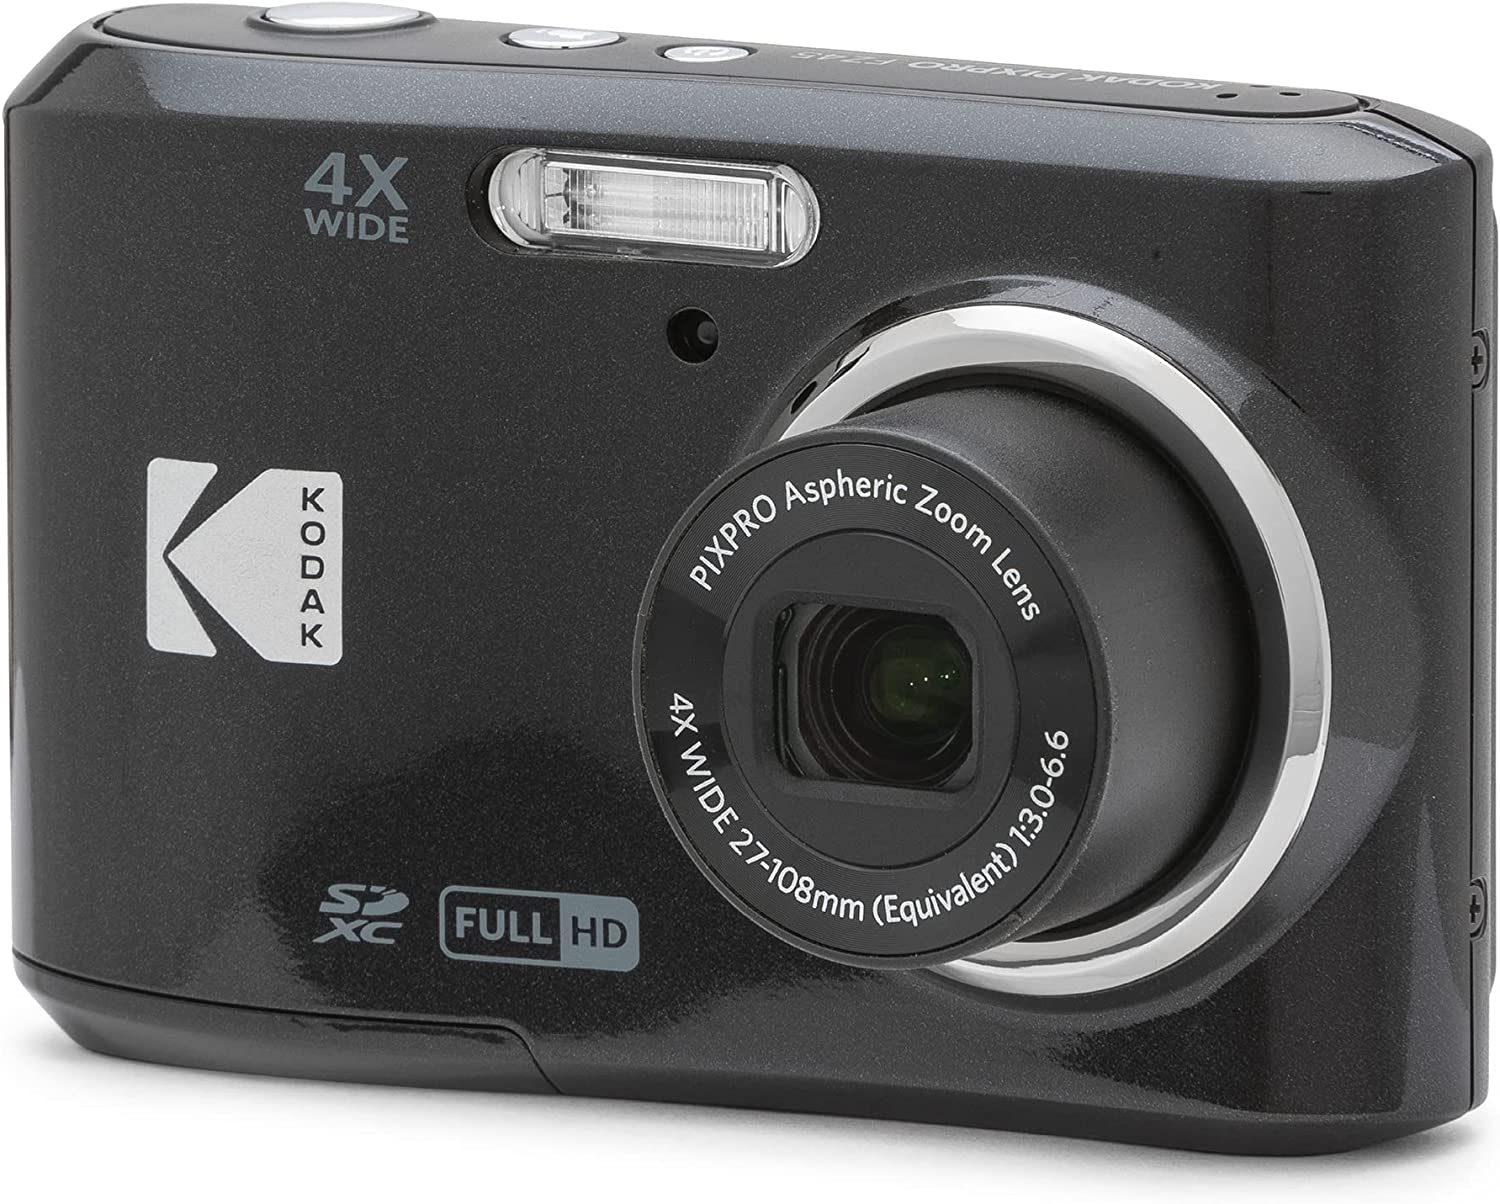 دوربین عکاسی مدل KODAK PIXPRO FZ45-BK 16MP - ارسال 20 الی 25 روز کاری